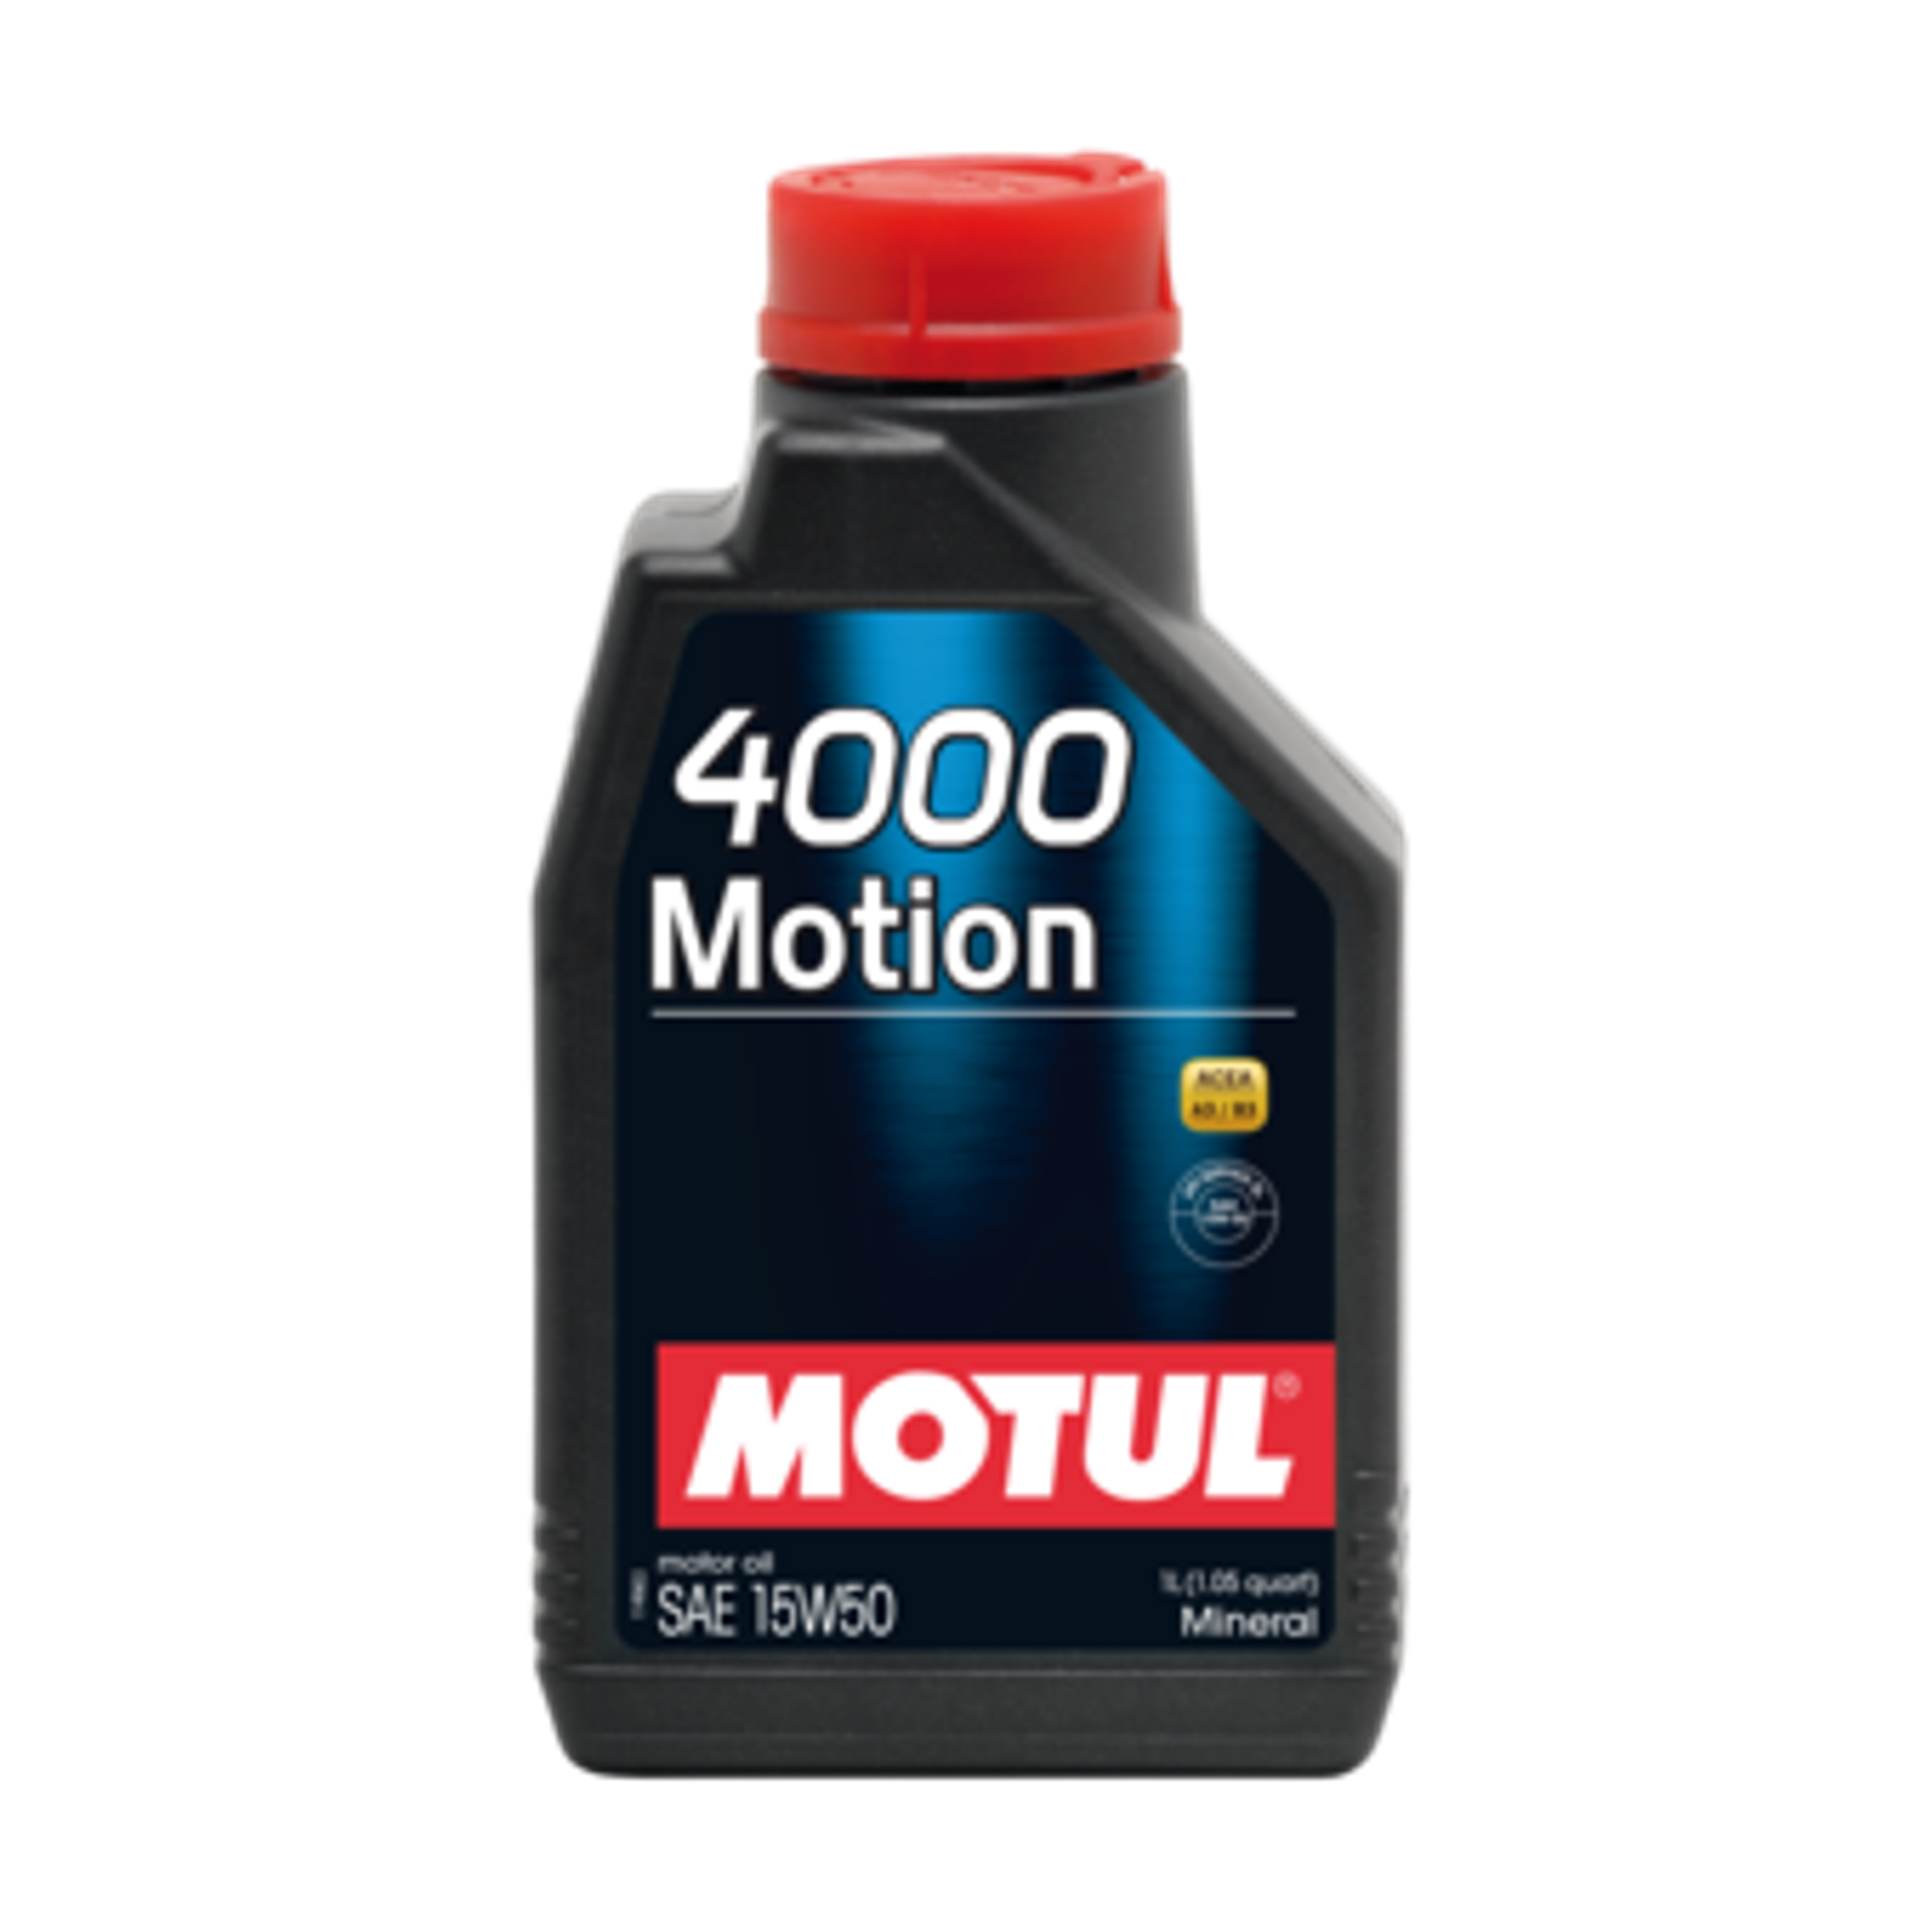 4000 Motion